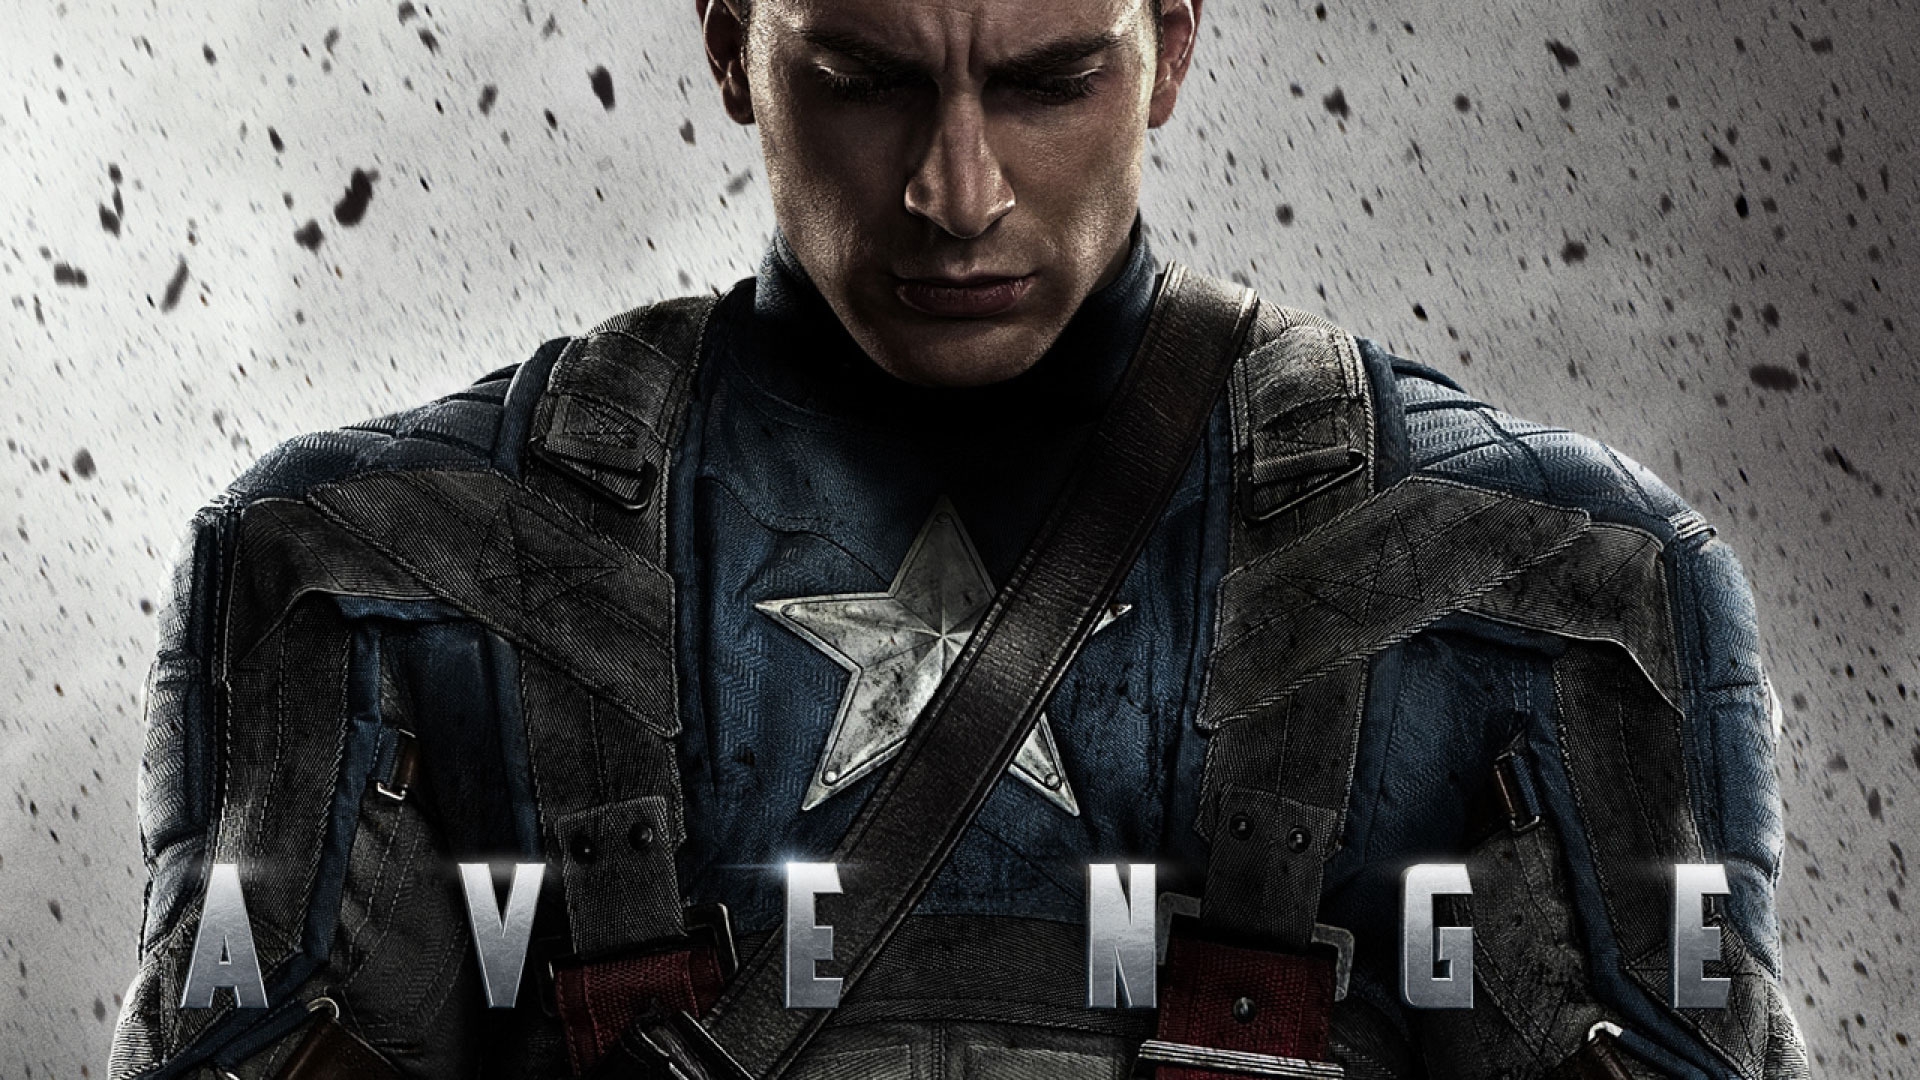 Avenger Captain America for 1920 x 1080 HDTV 1080p resolution